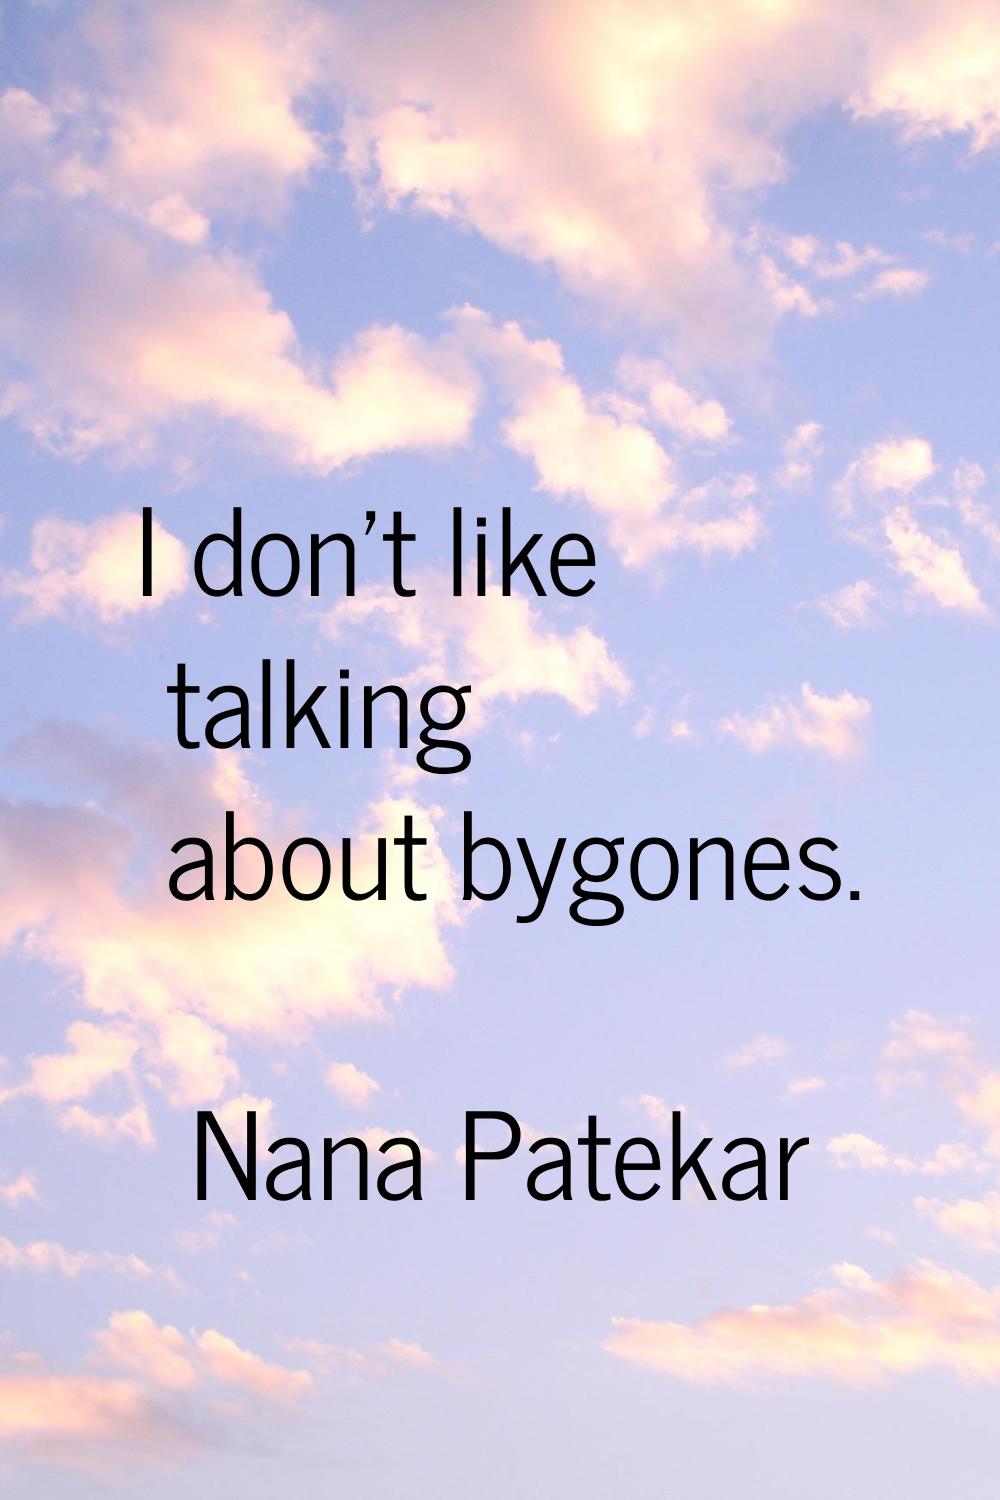 I don't like talking about bygones.